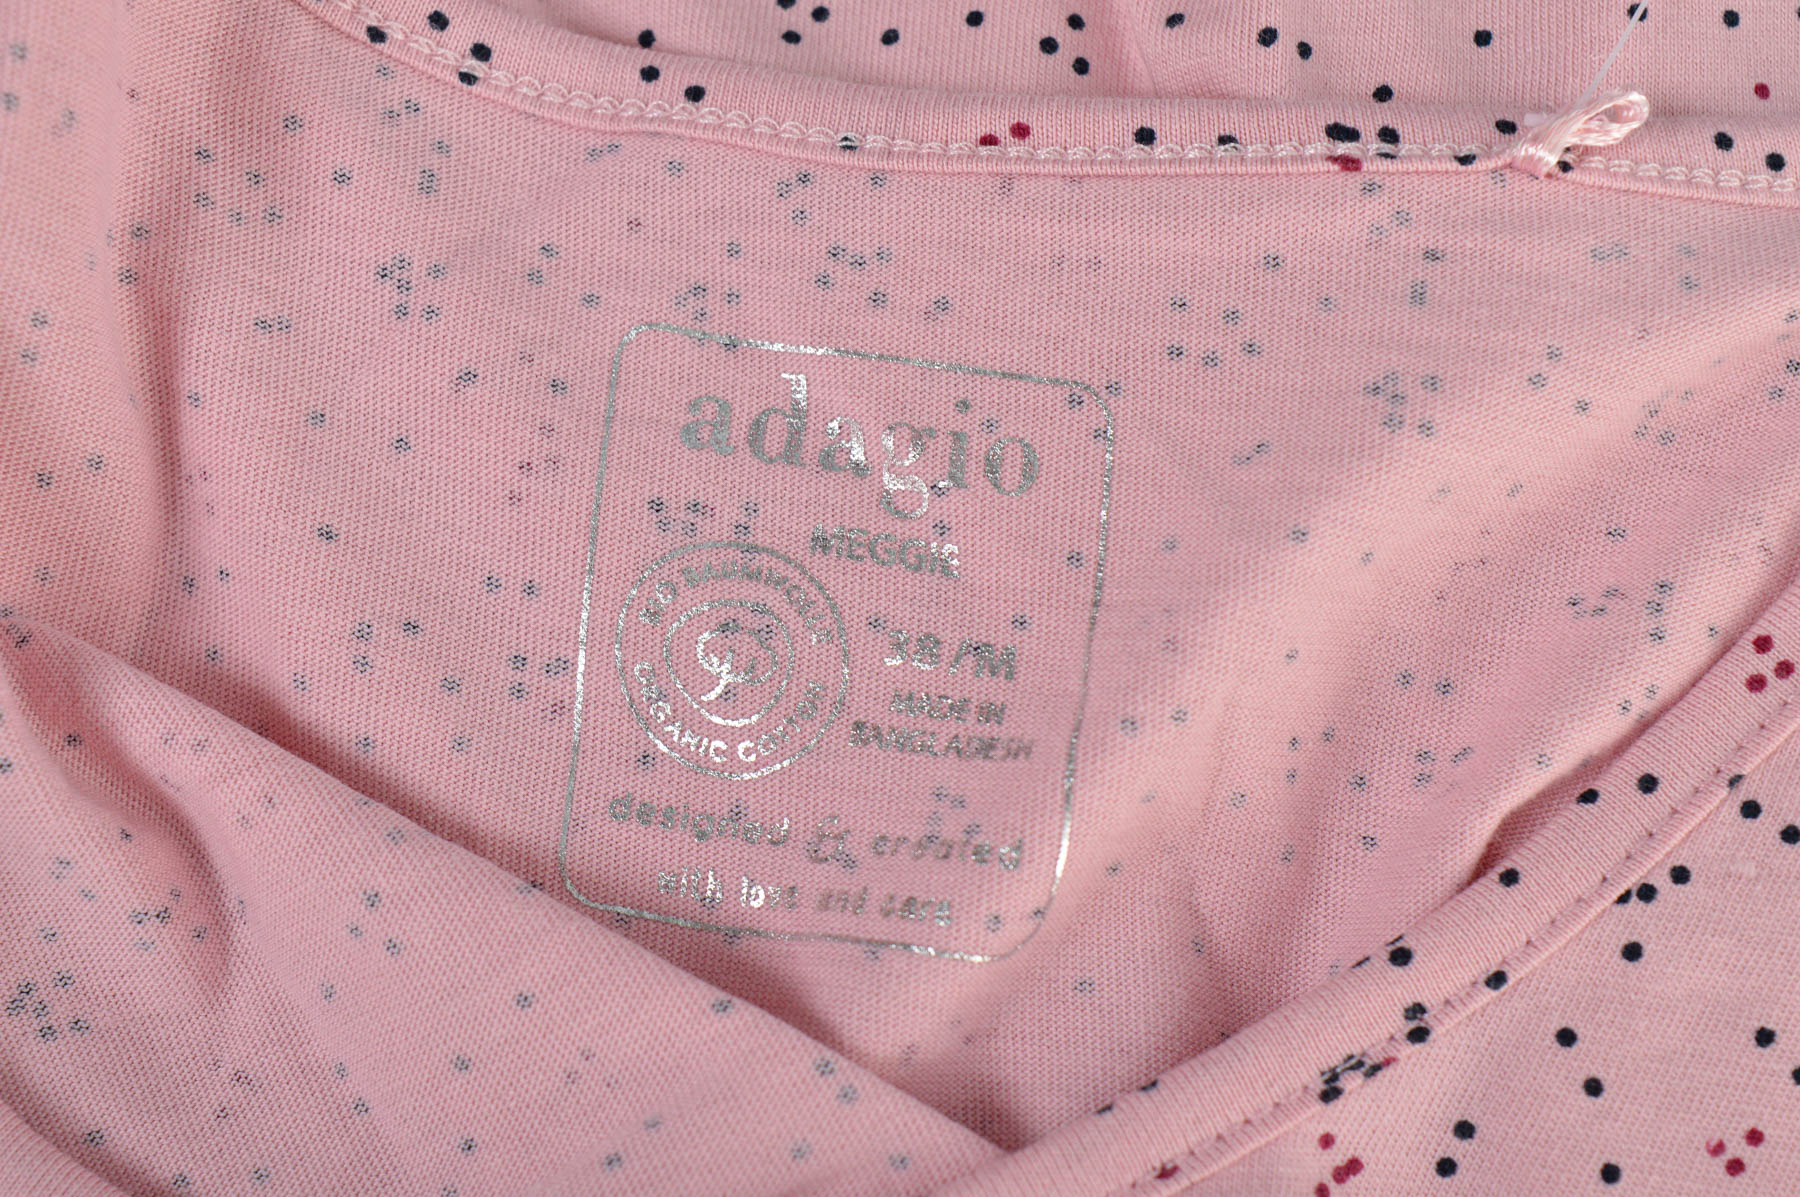 Bluza de damă - Adagio - 2